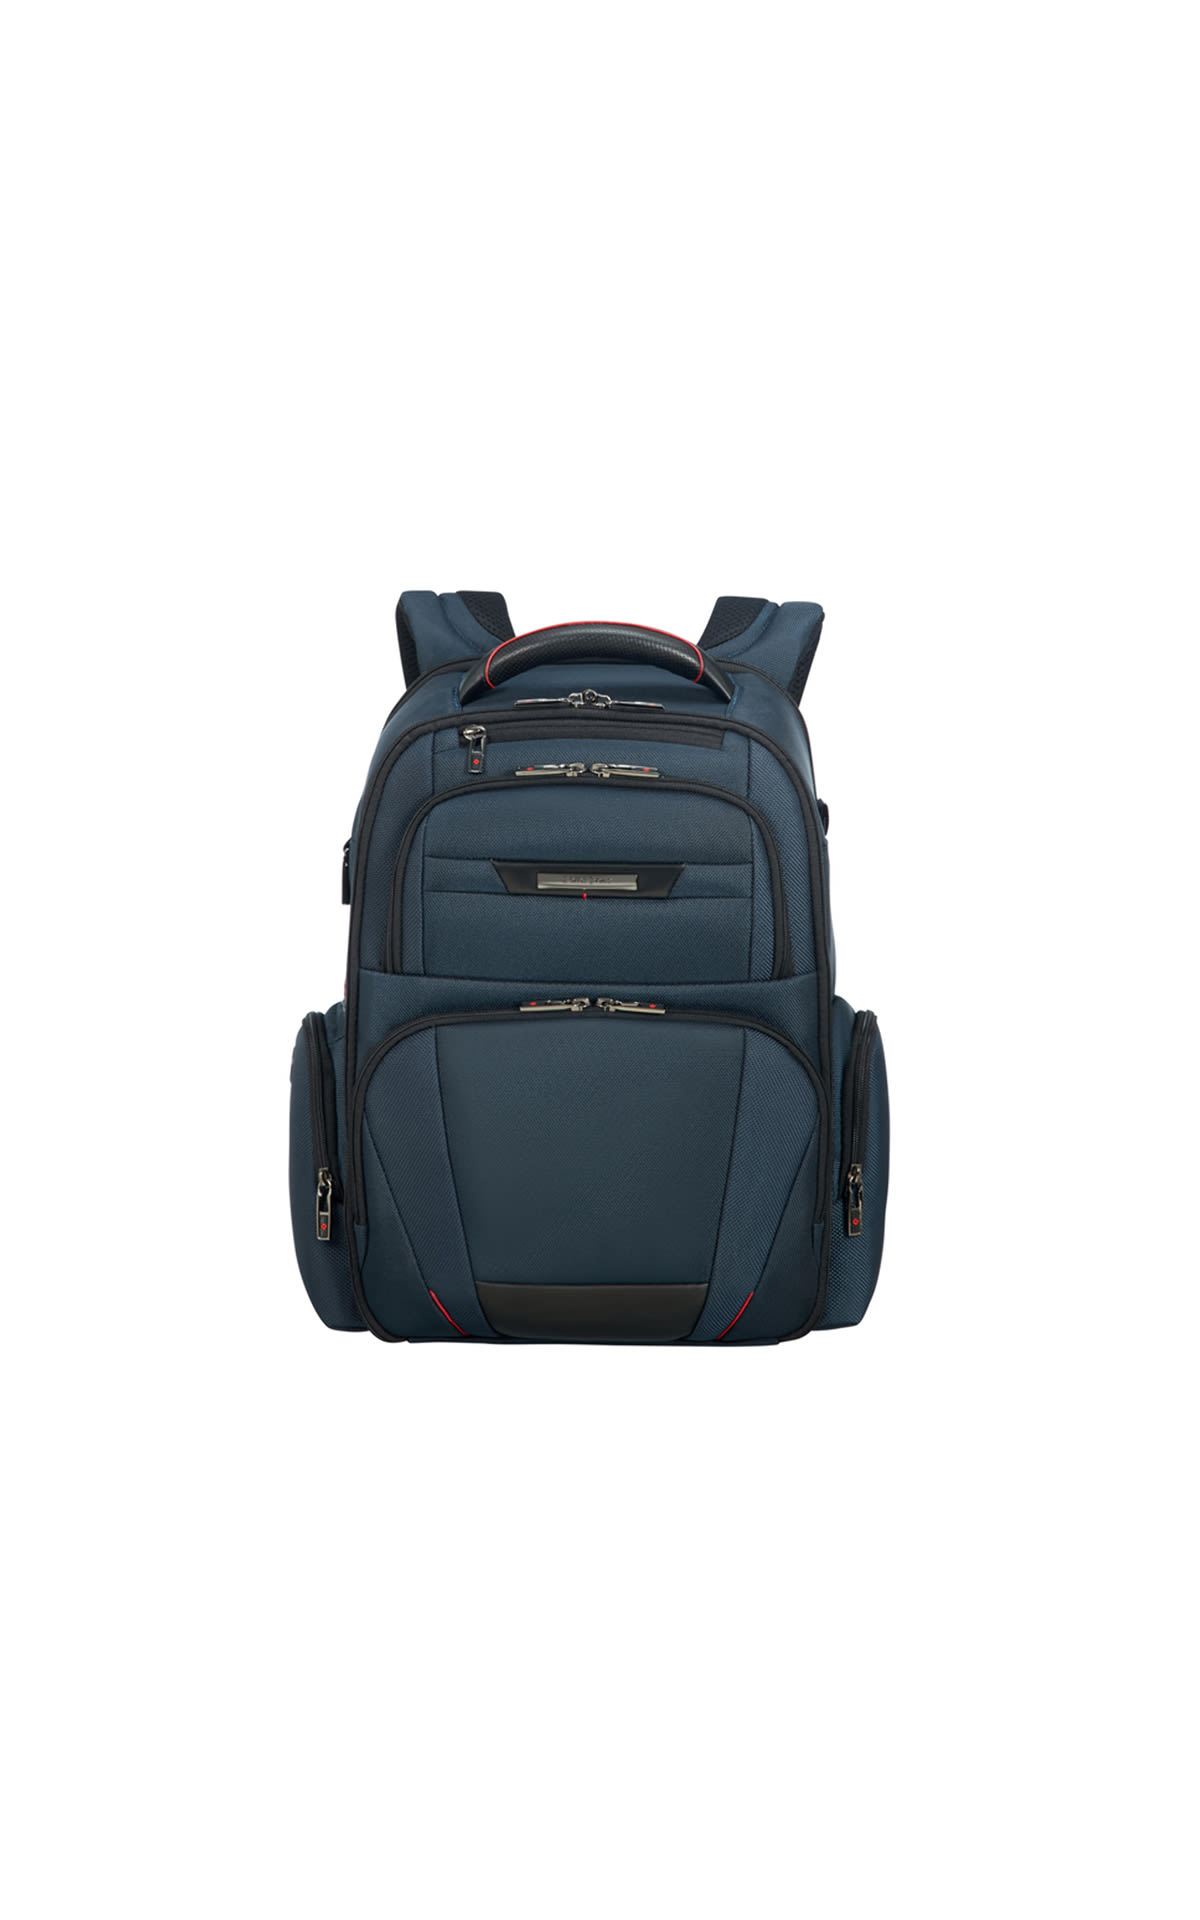 Backpack pro-dl 5 15.6" oxford blue Samsonite